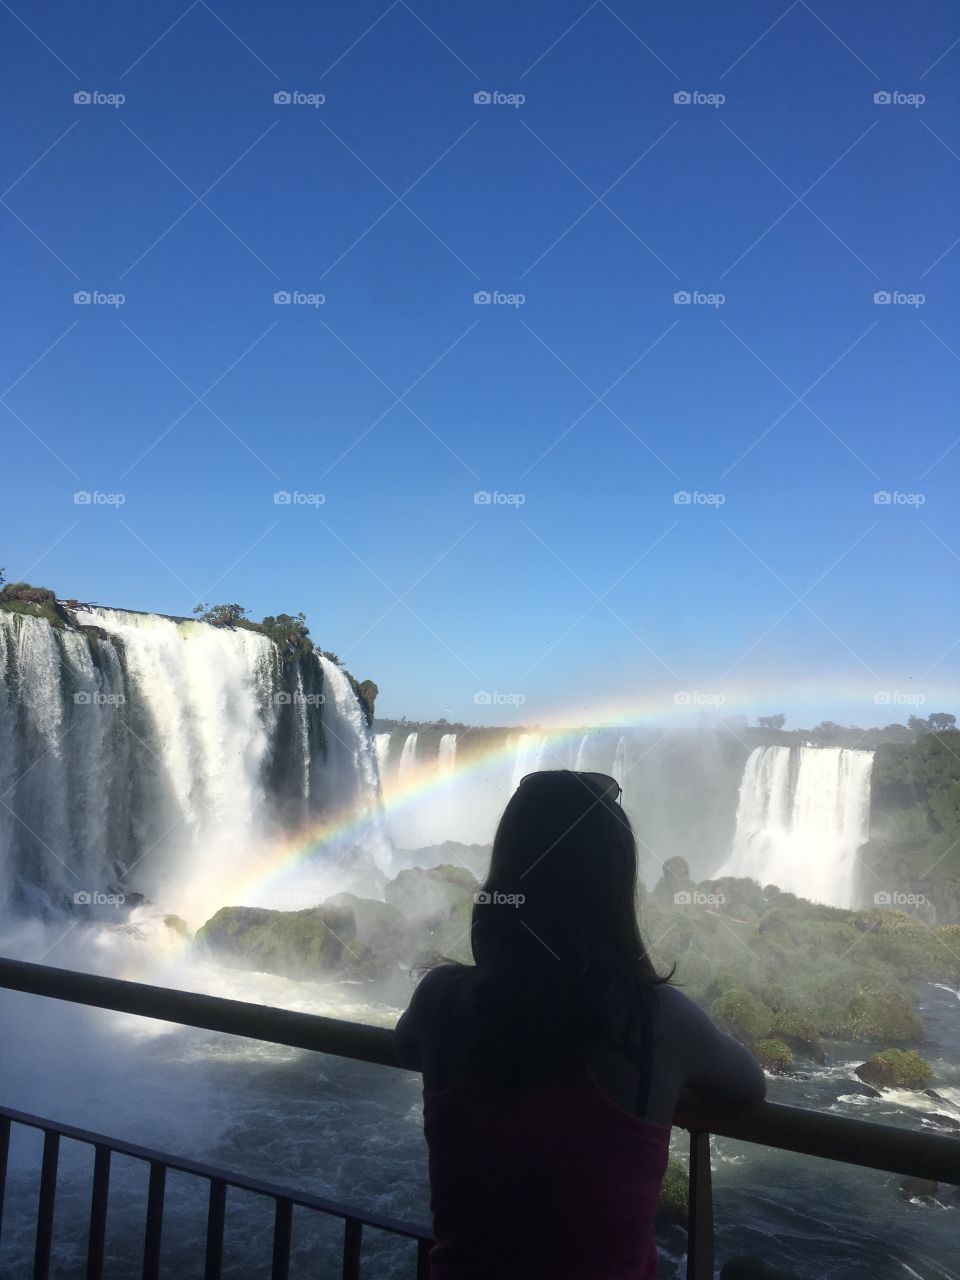 Enjoy the Waterfall in Brazil